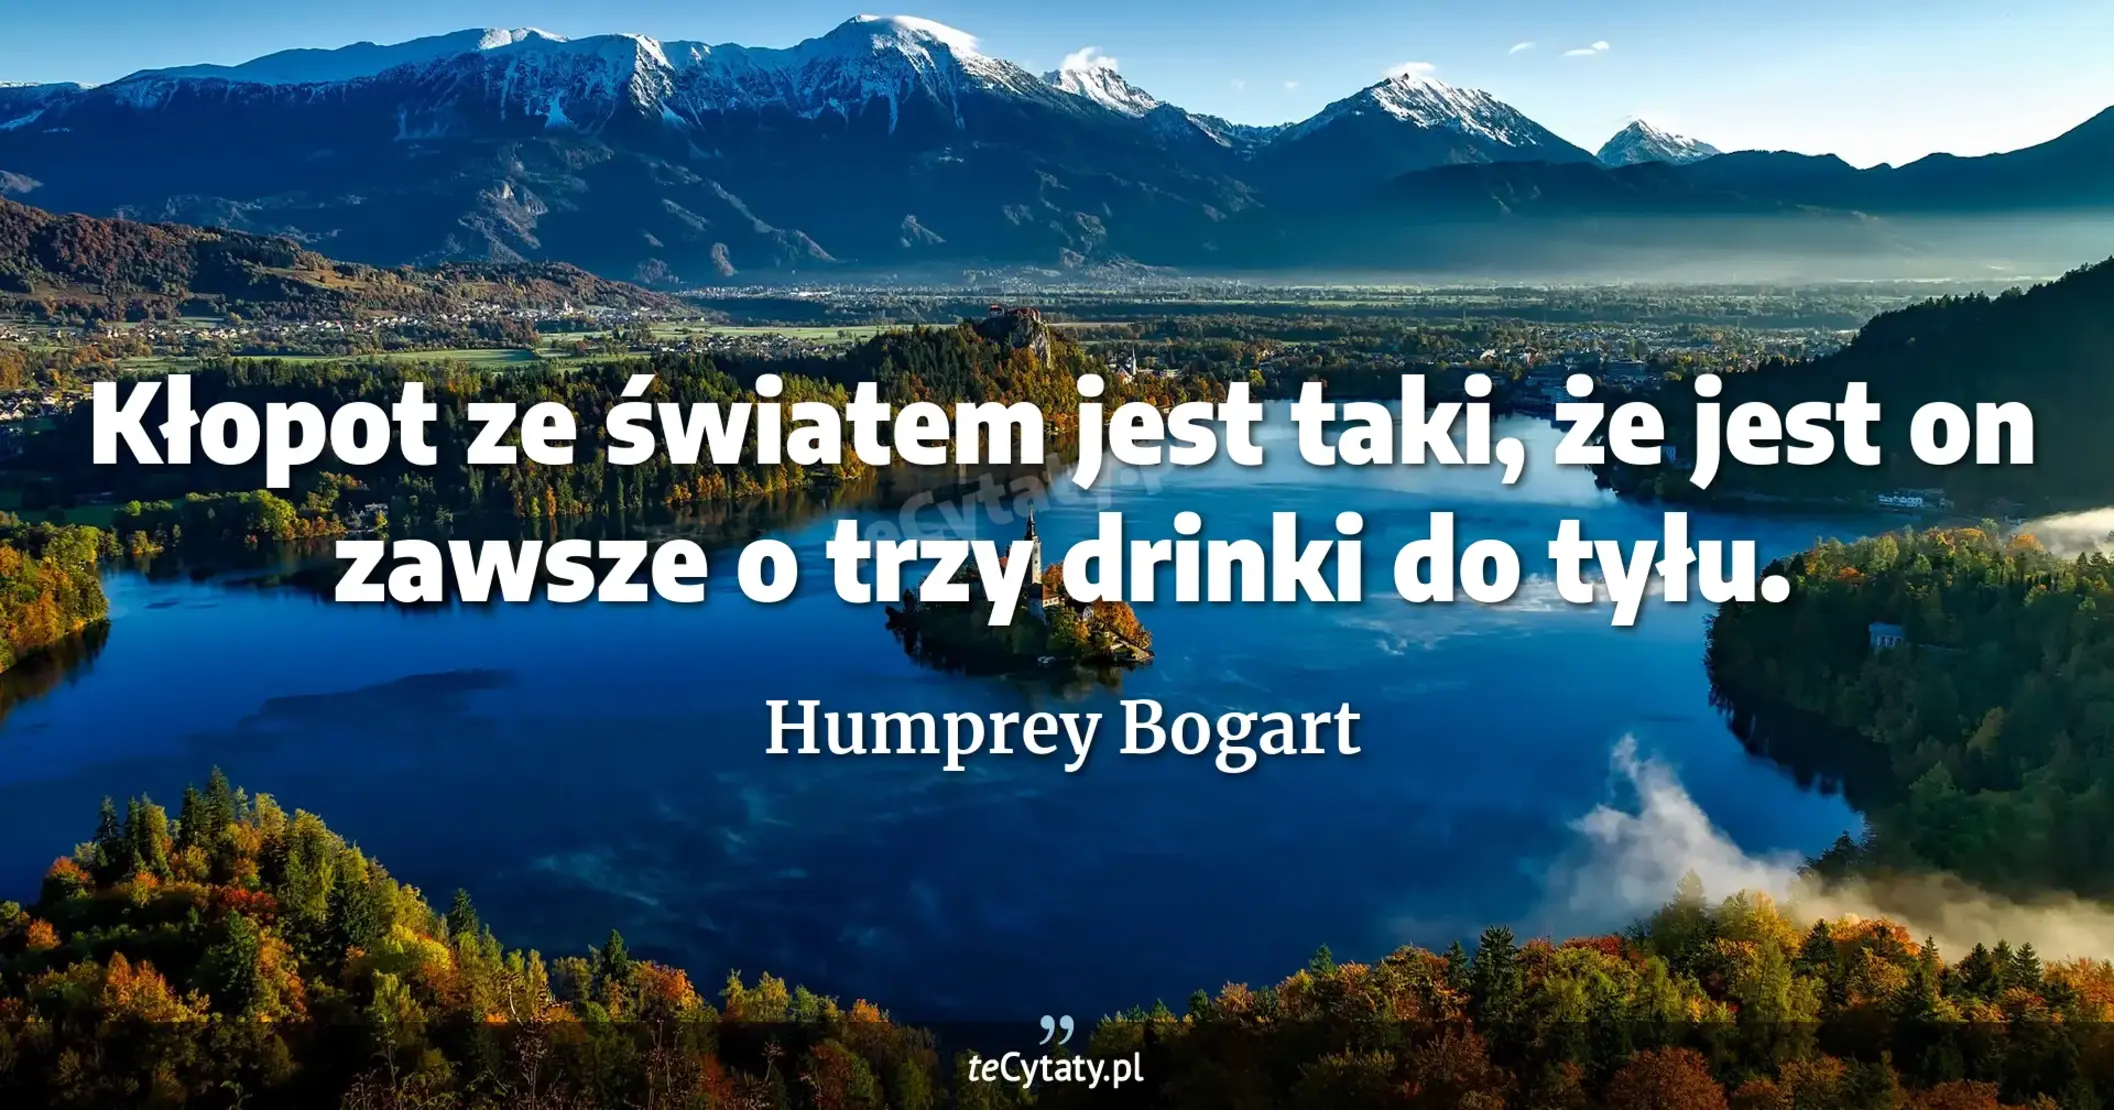 Kłopot ze światem jest taki, że jest on zawsze o trzy drinki do tyłu. - Humprey Bogart